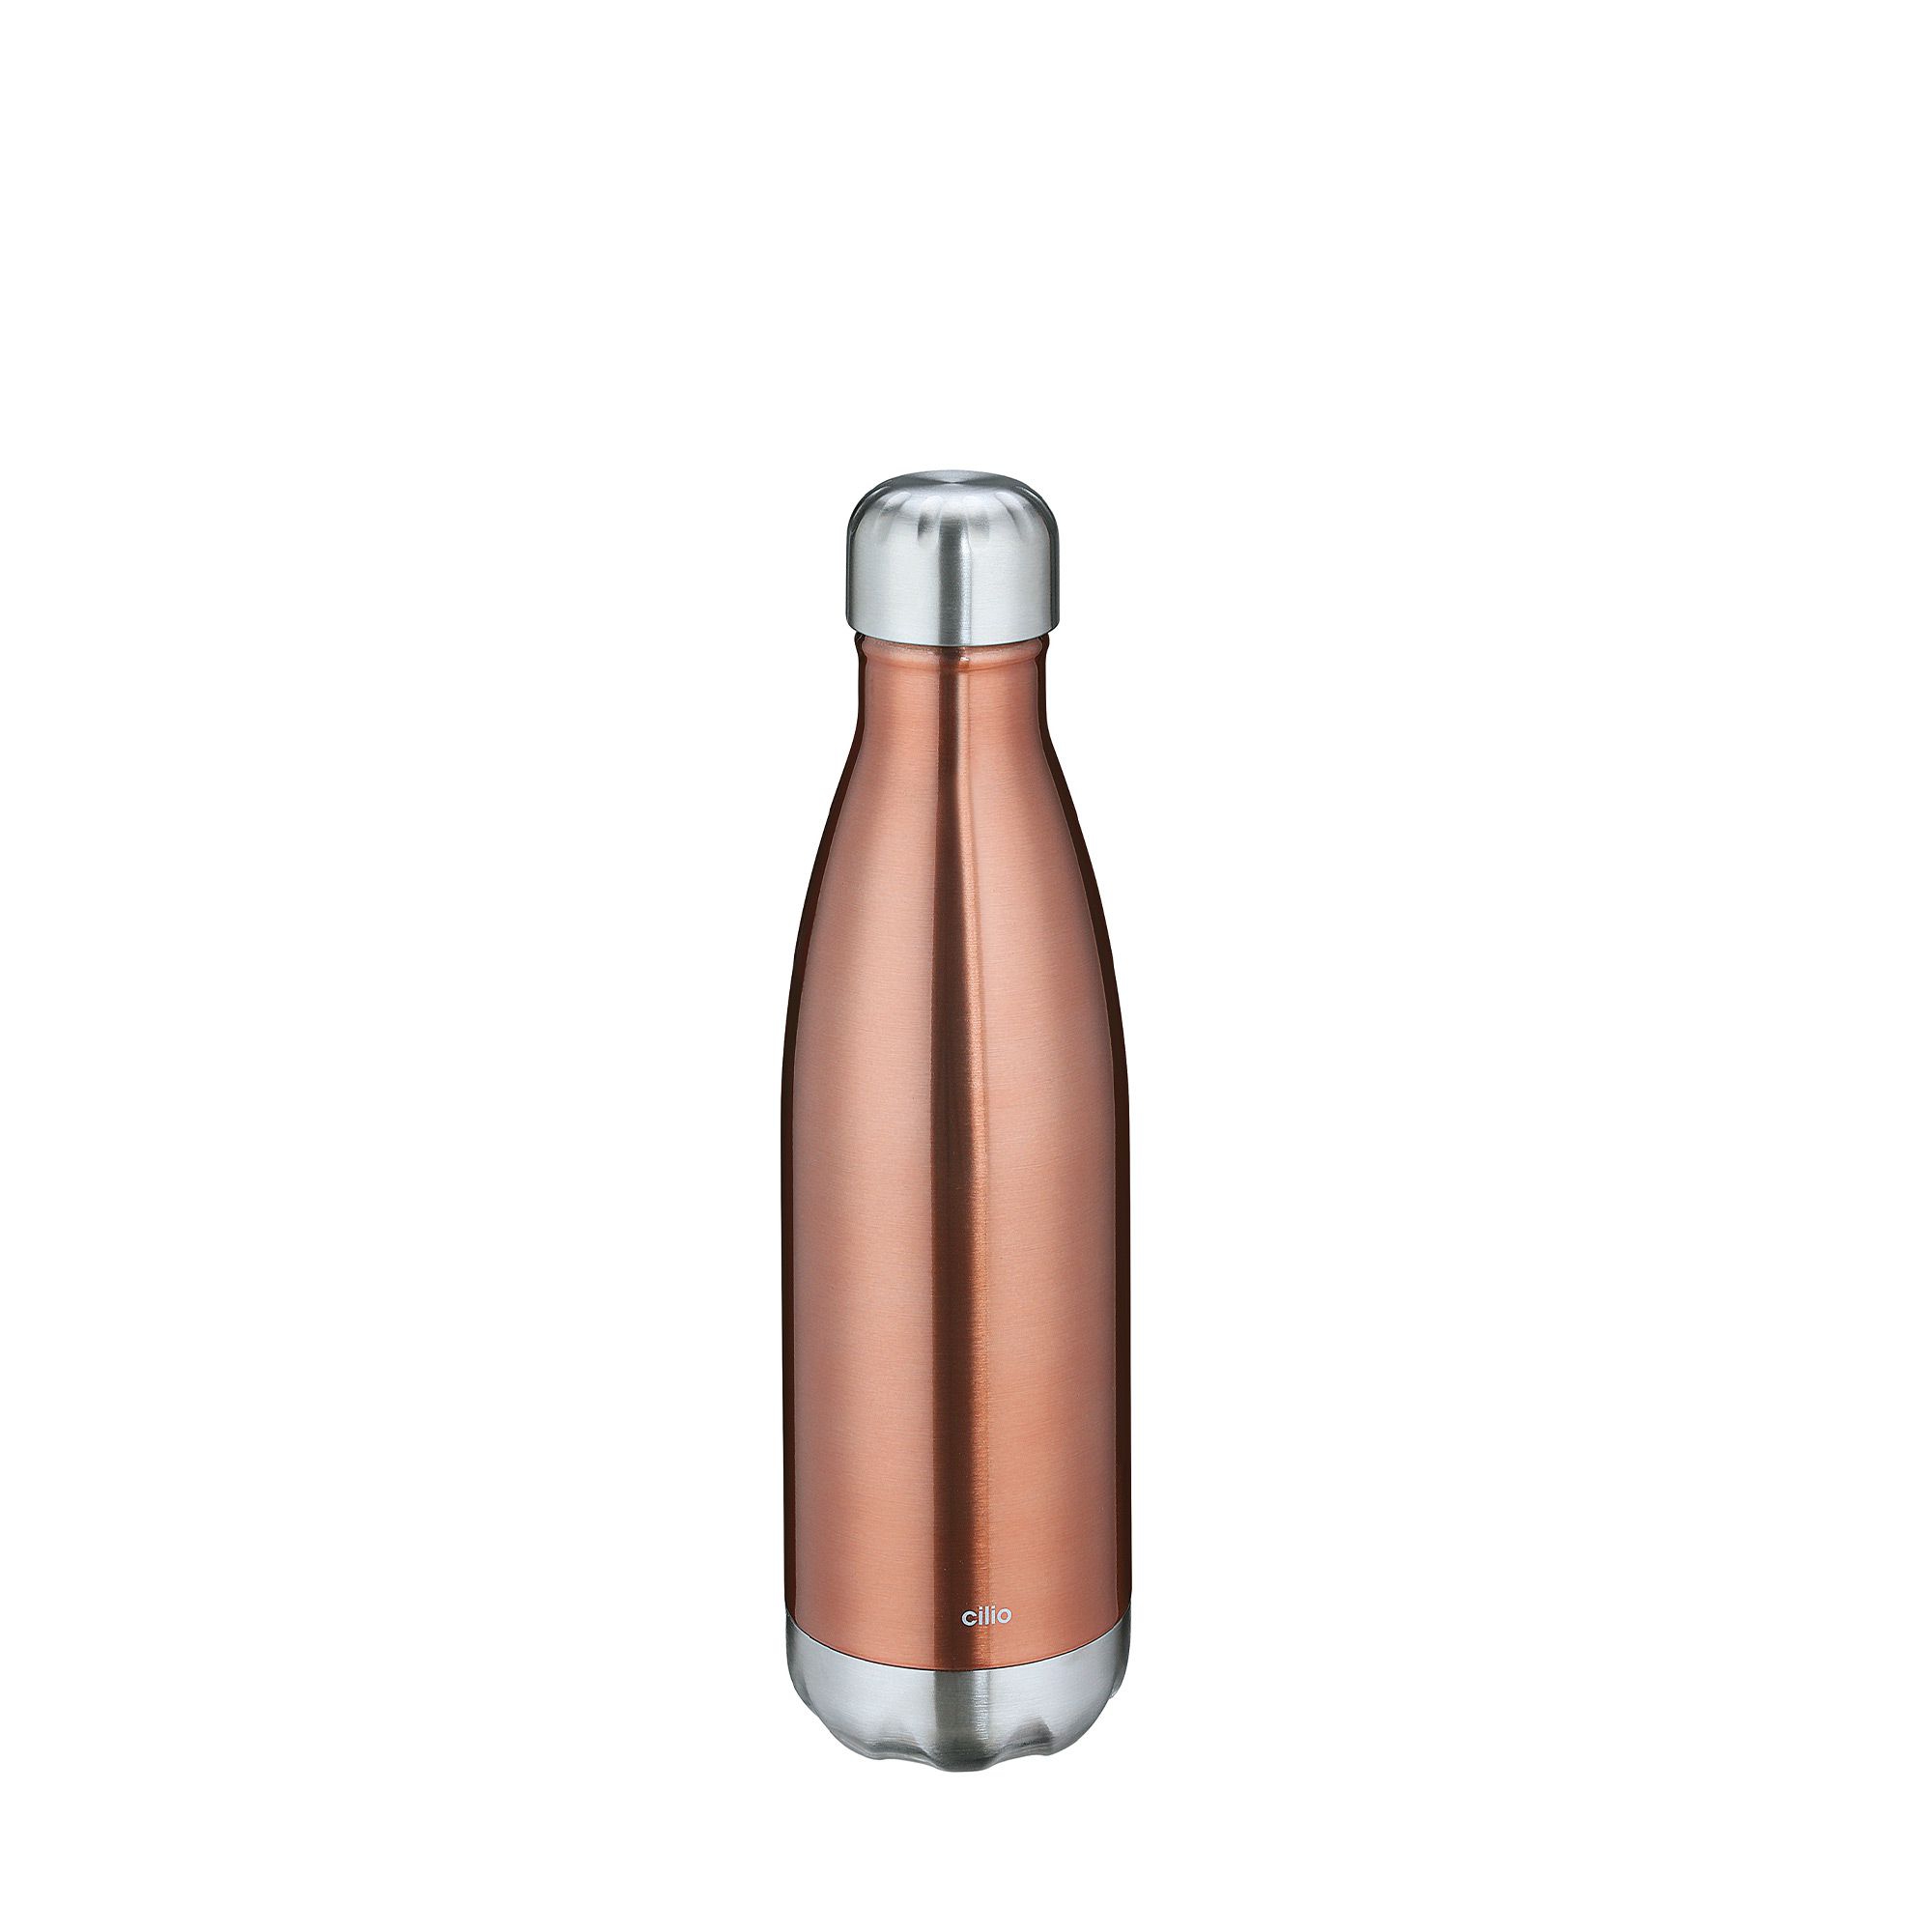 cilio - Insulating bottle "Elegante"